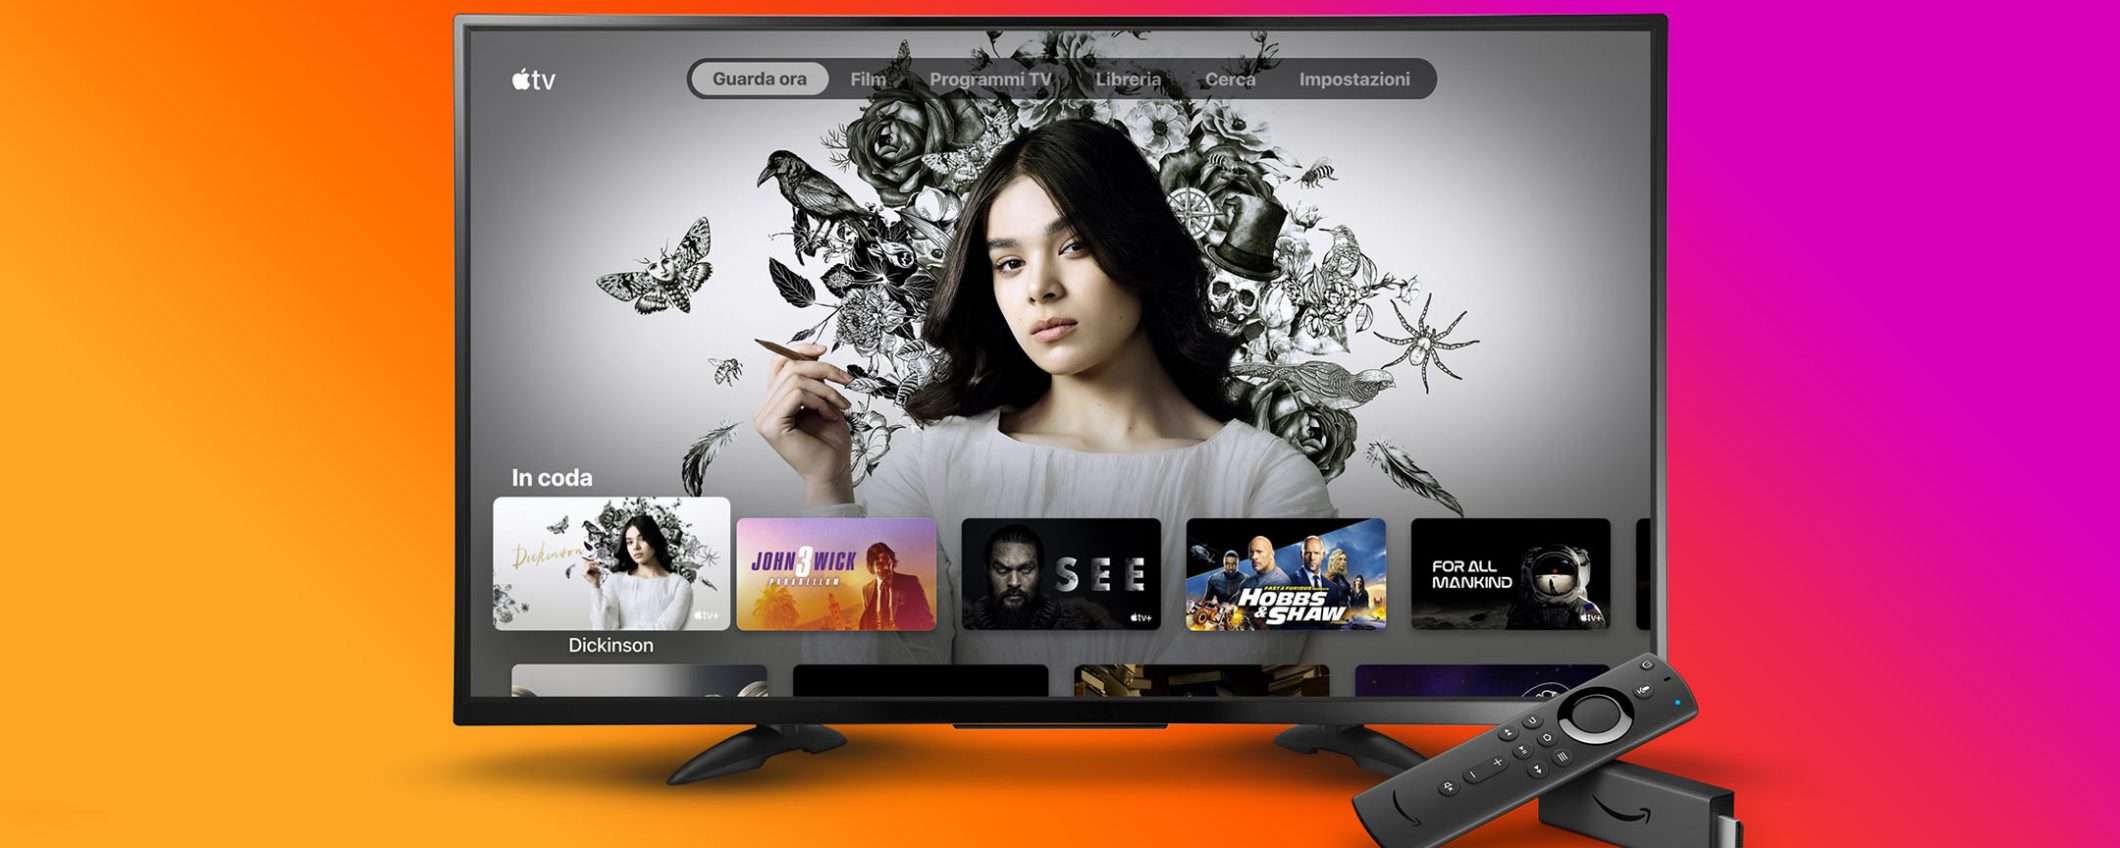 L'applicazione Apple TV arriva su Amazon Fire TV